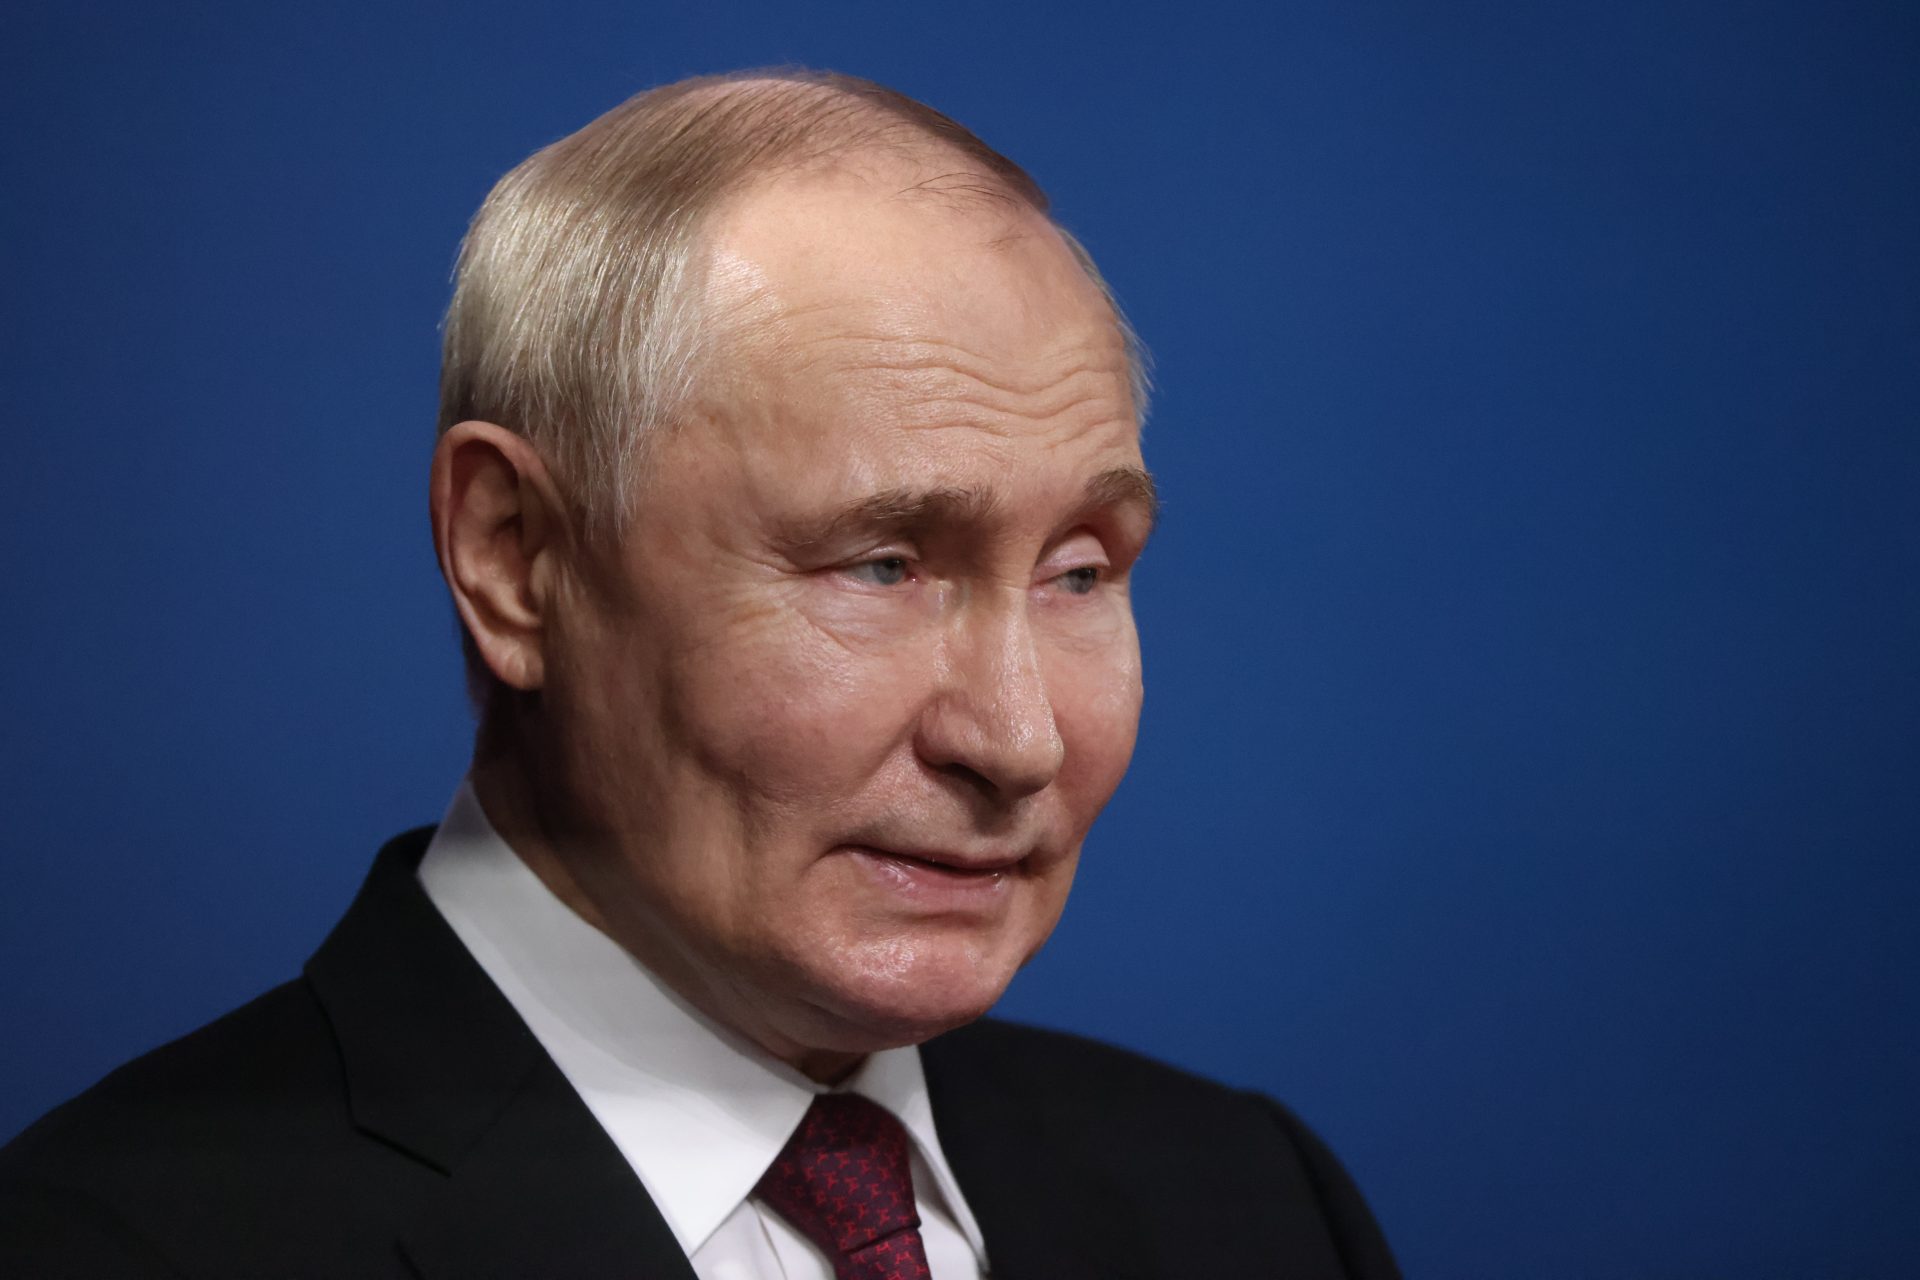 Welke landen liggen na Oekraïne in het vizier van Poetin?